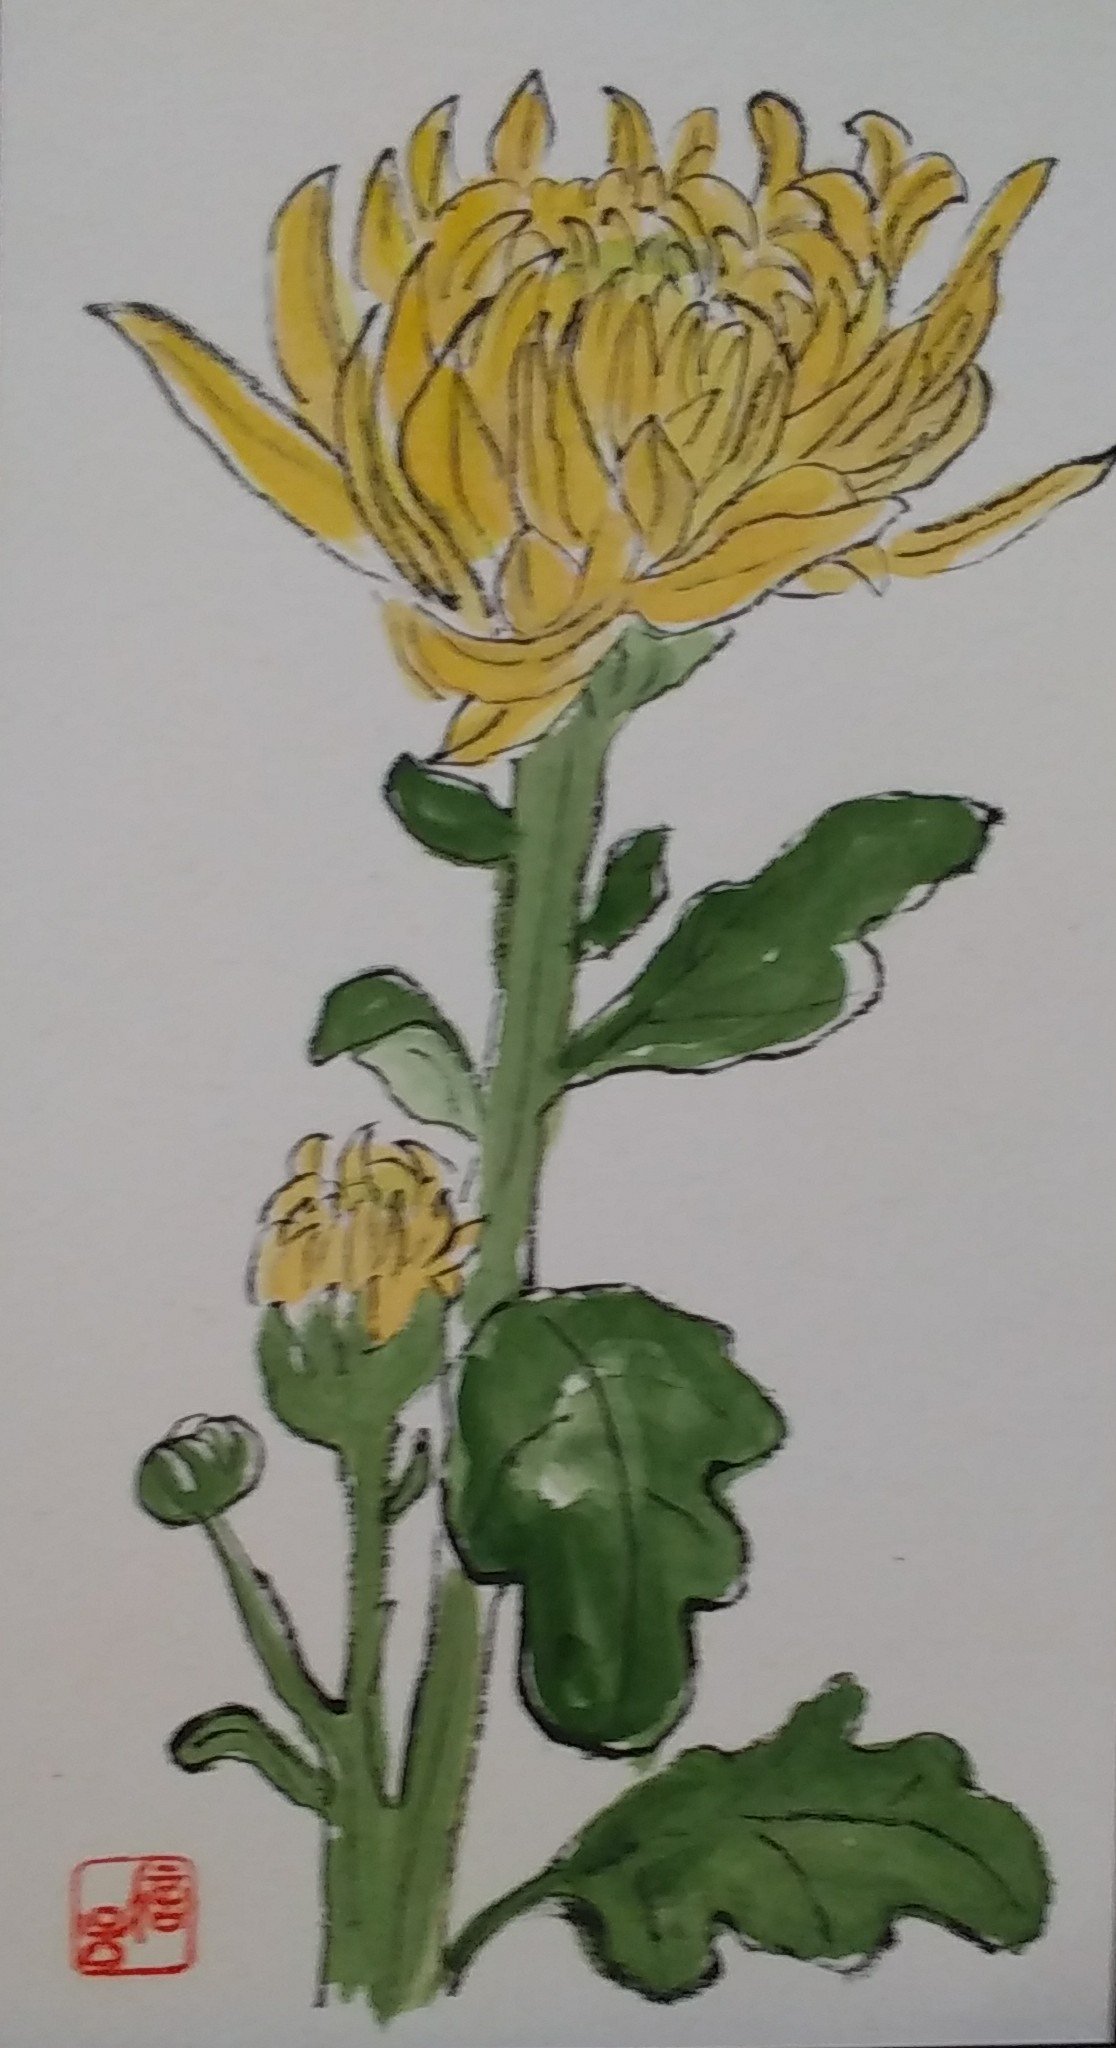 みはえる 菊を描きました 絵手紙 菊 イラスト T Co Mhpy5r7l0d Twitter